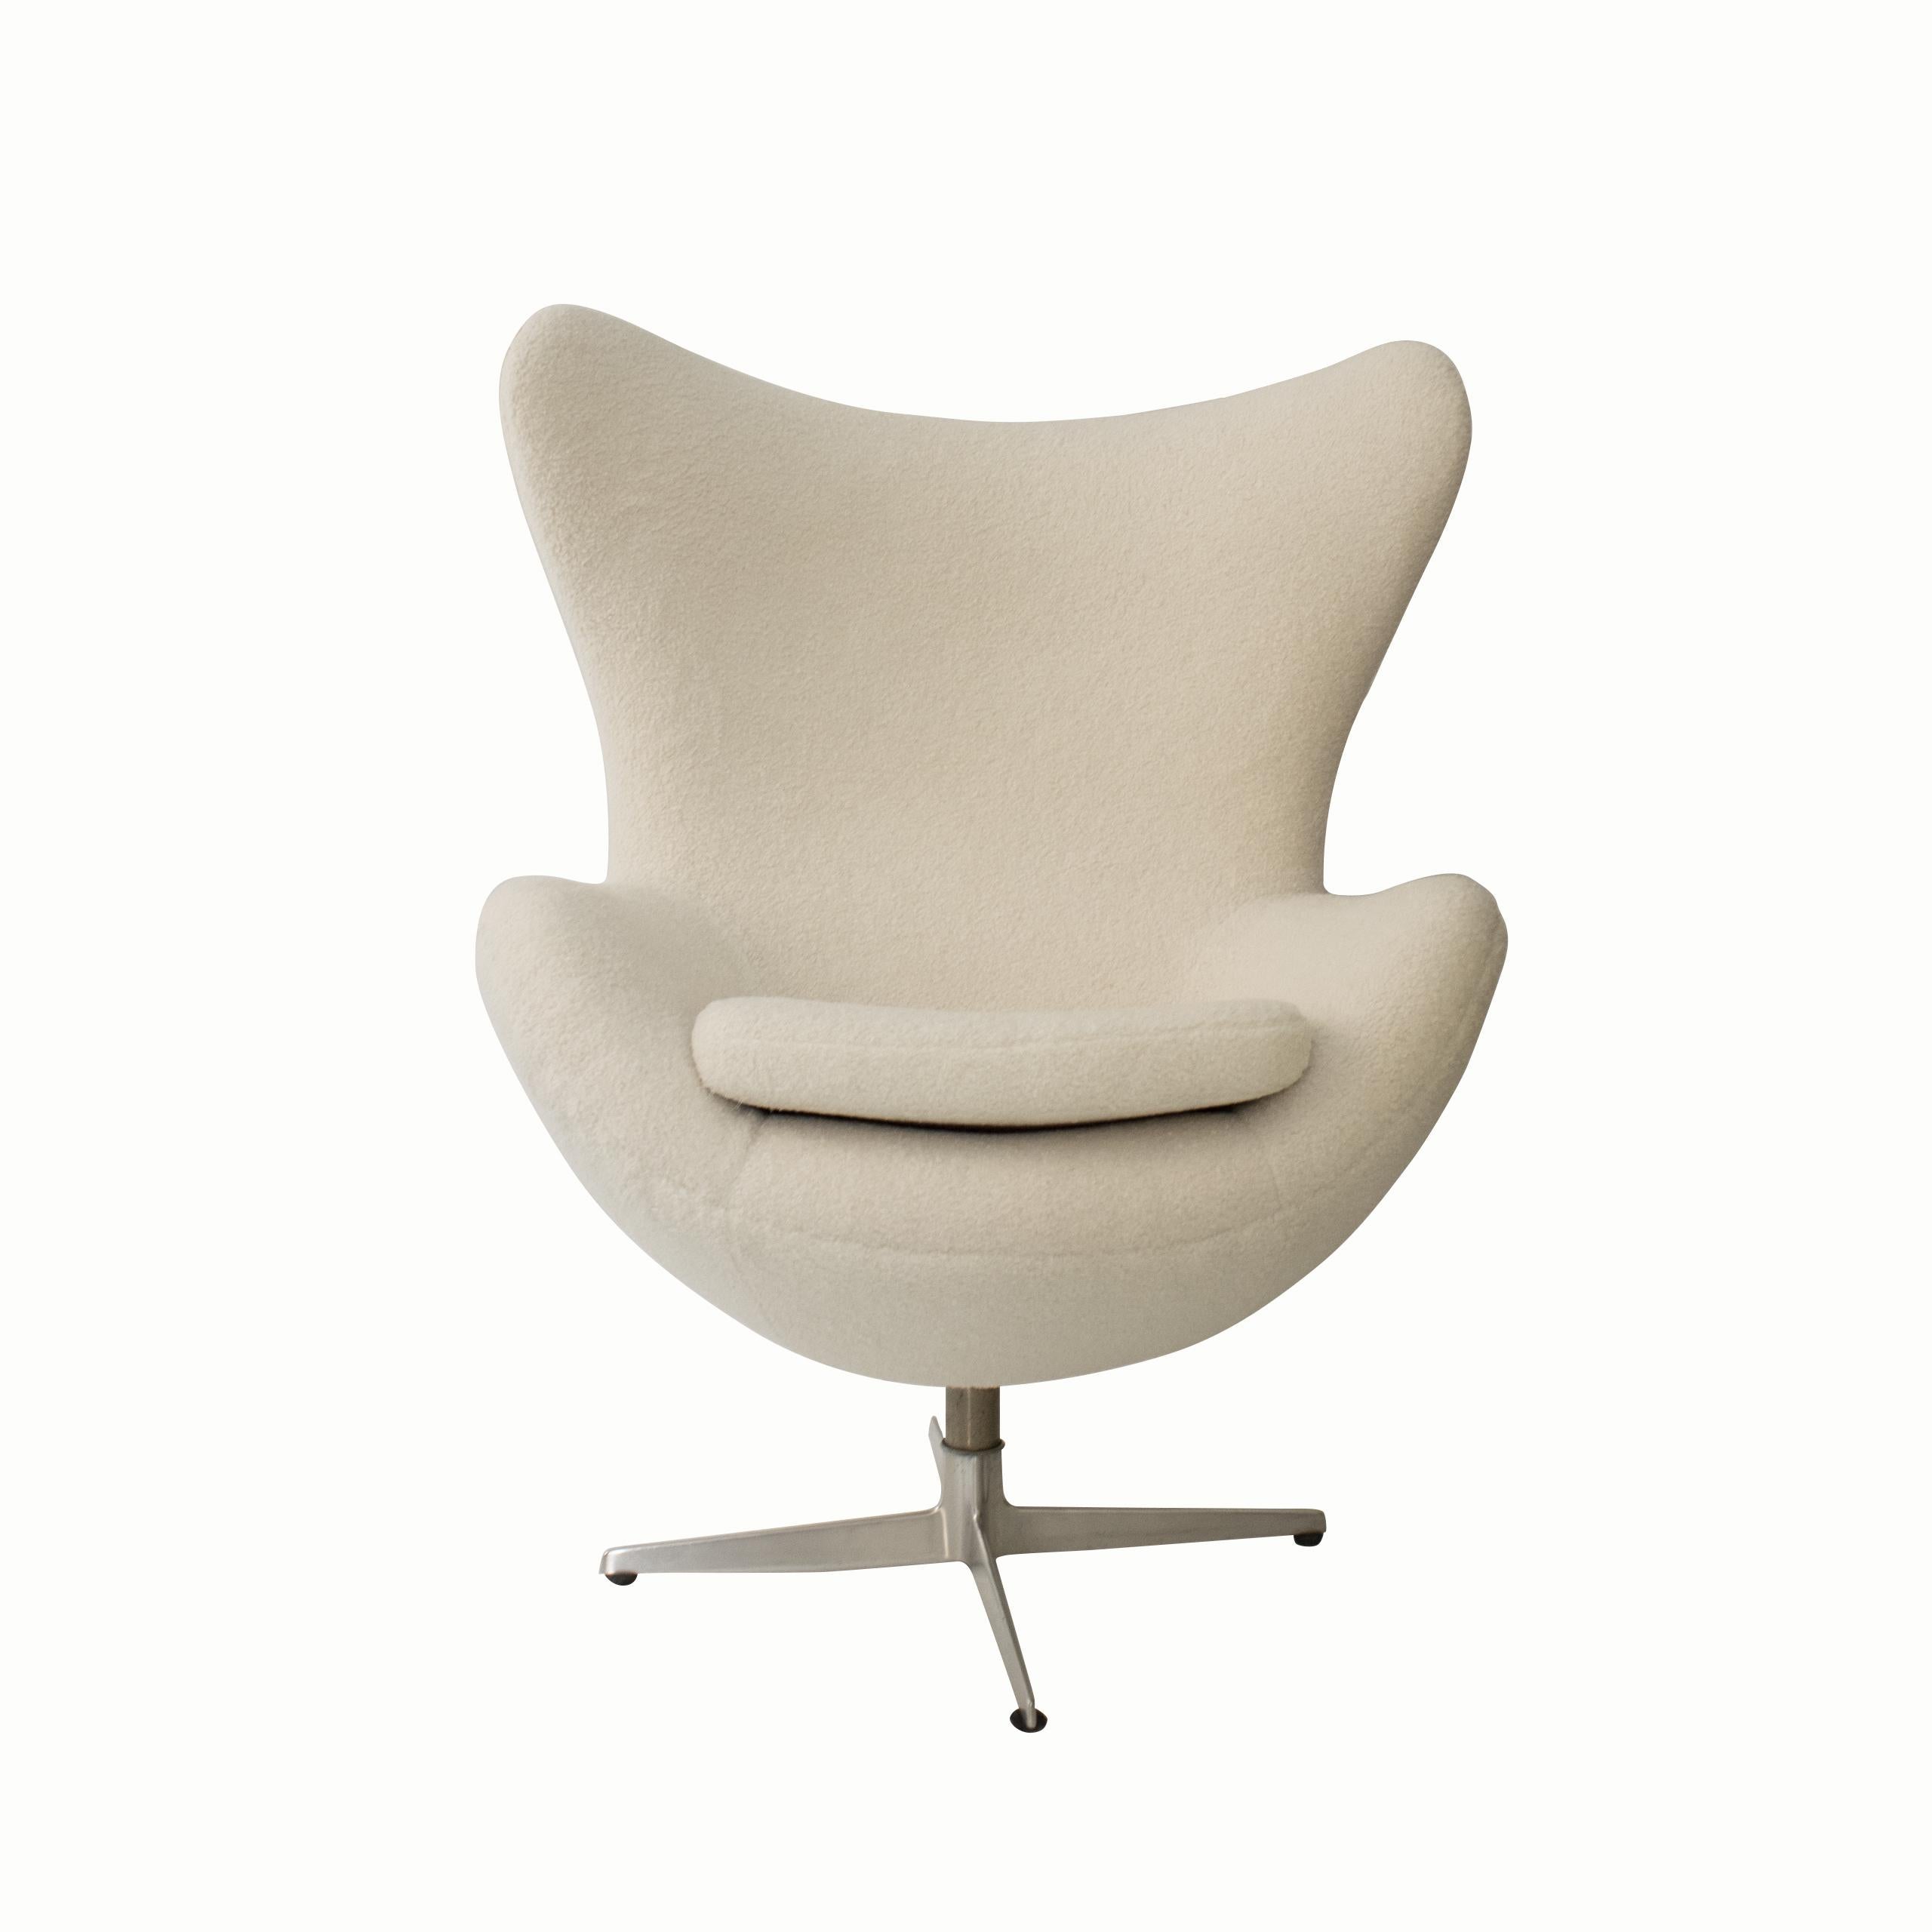  Der Egg Chair wurde 1958 von Arne Jacobsen für das SAS Hotel in Dänemark entworfen und besteht aus einem Gestell aus Birkensperrholz, das mit Schaumstoff und Stoff gepolstert ist - eine Technik, die von Jacobsen entwickelt wurde. Dieser Artikel